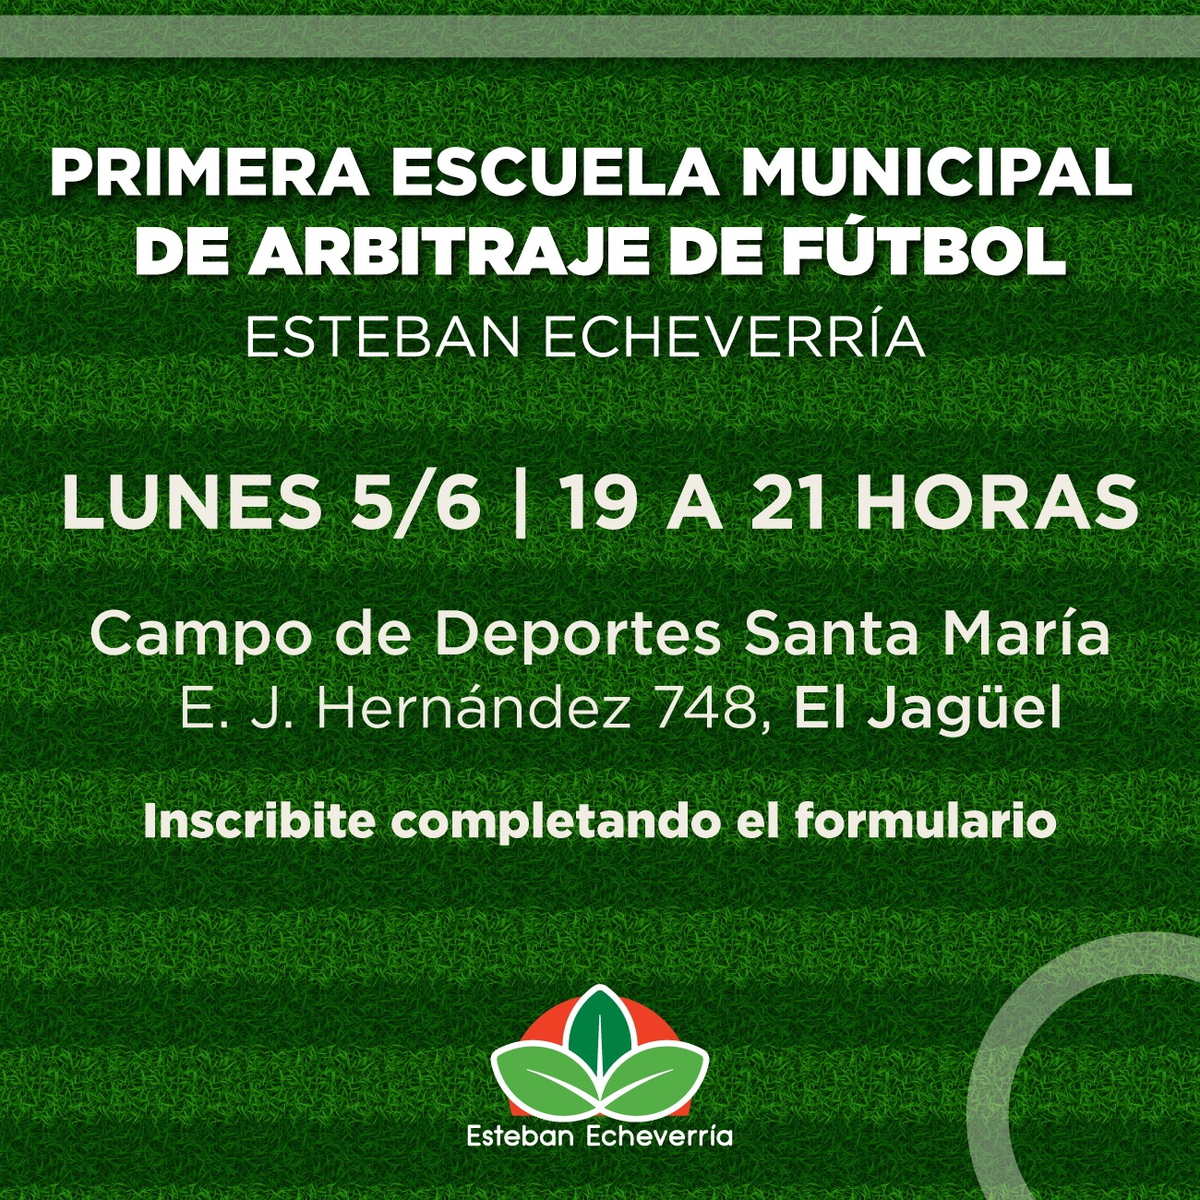 La Escuela Municipal se realizará en el Campo de Deportes Santa María, en El Jagüel, Esteban Echeverría.